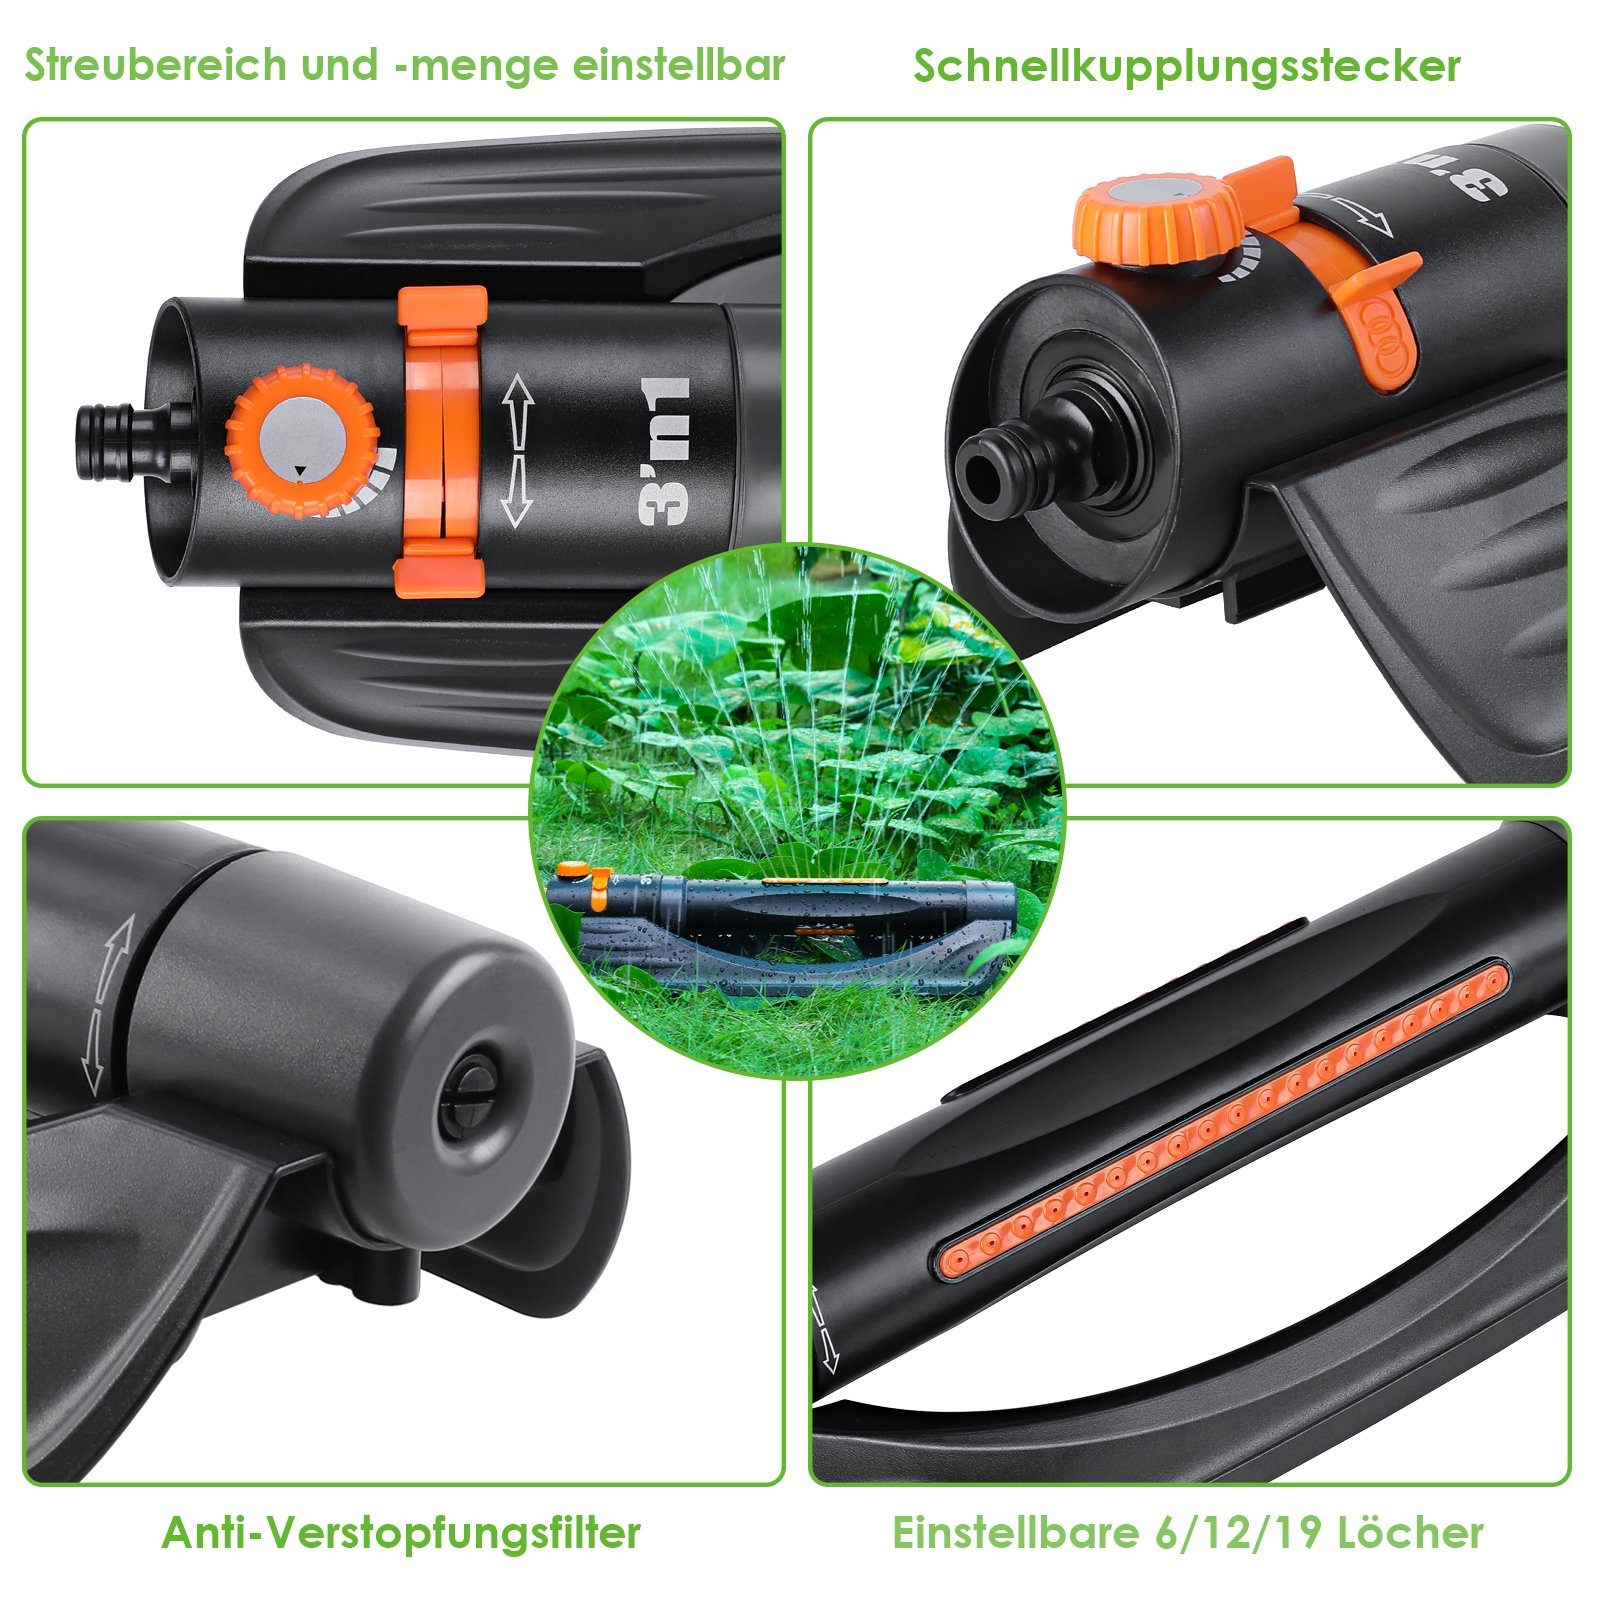 Details about   Rasensprenger 3in1 Automatisch Viereckregner aus hochwertigem ABS-Kunststoff 